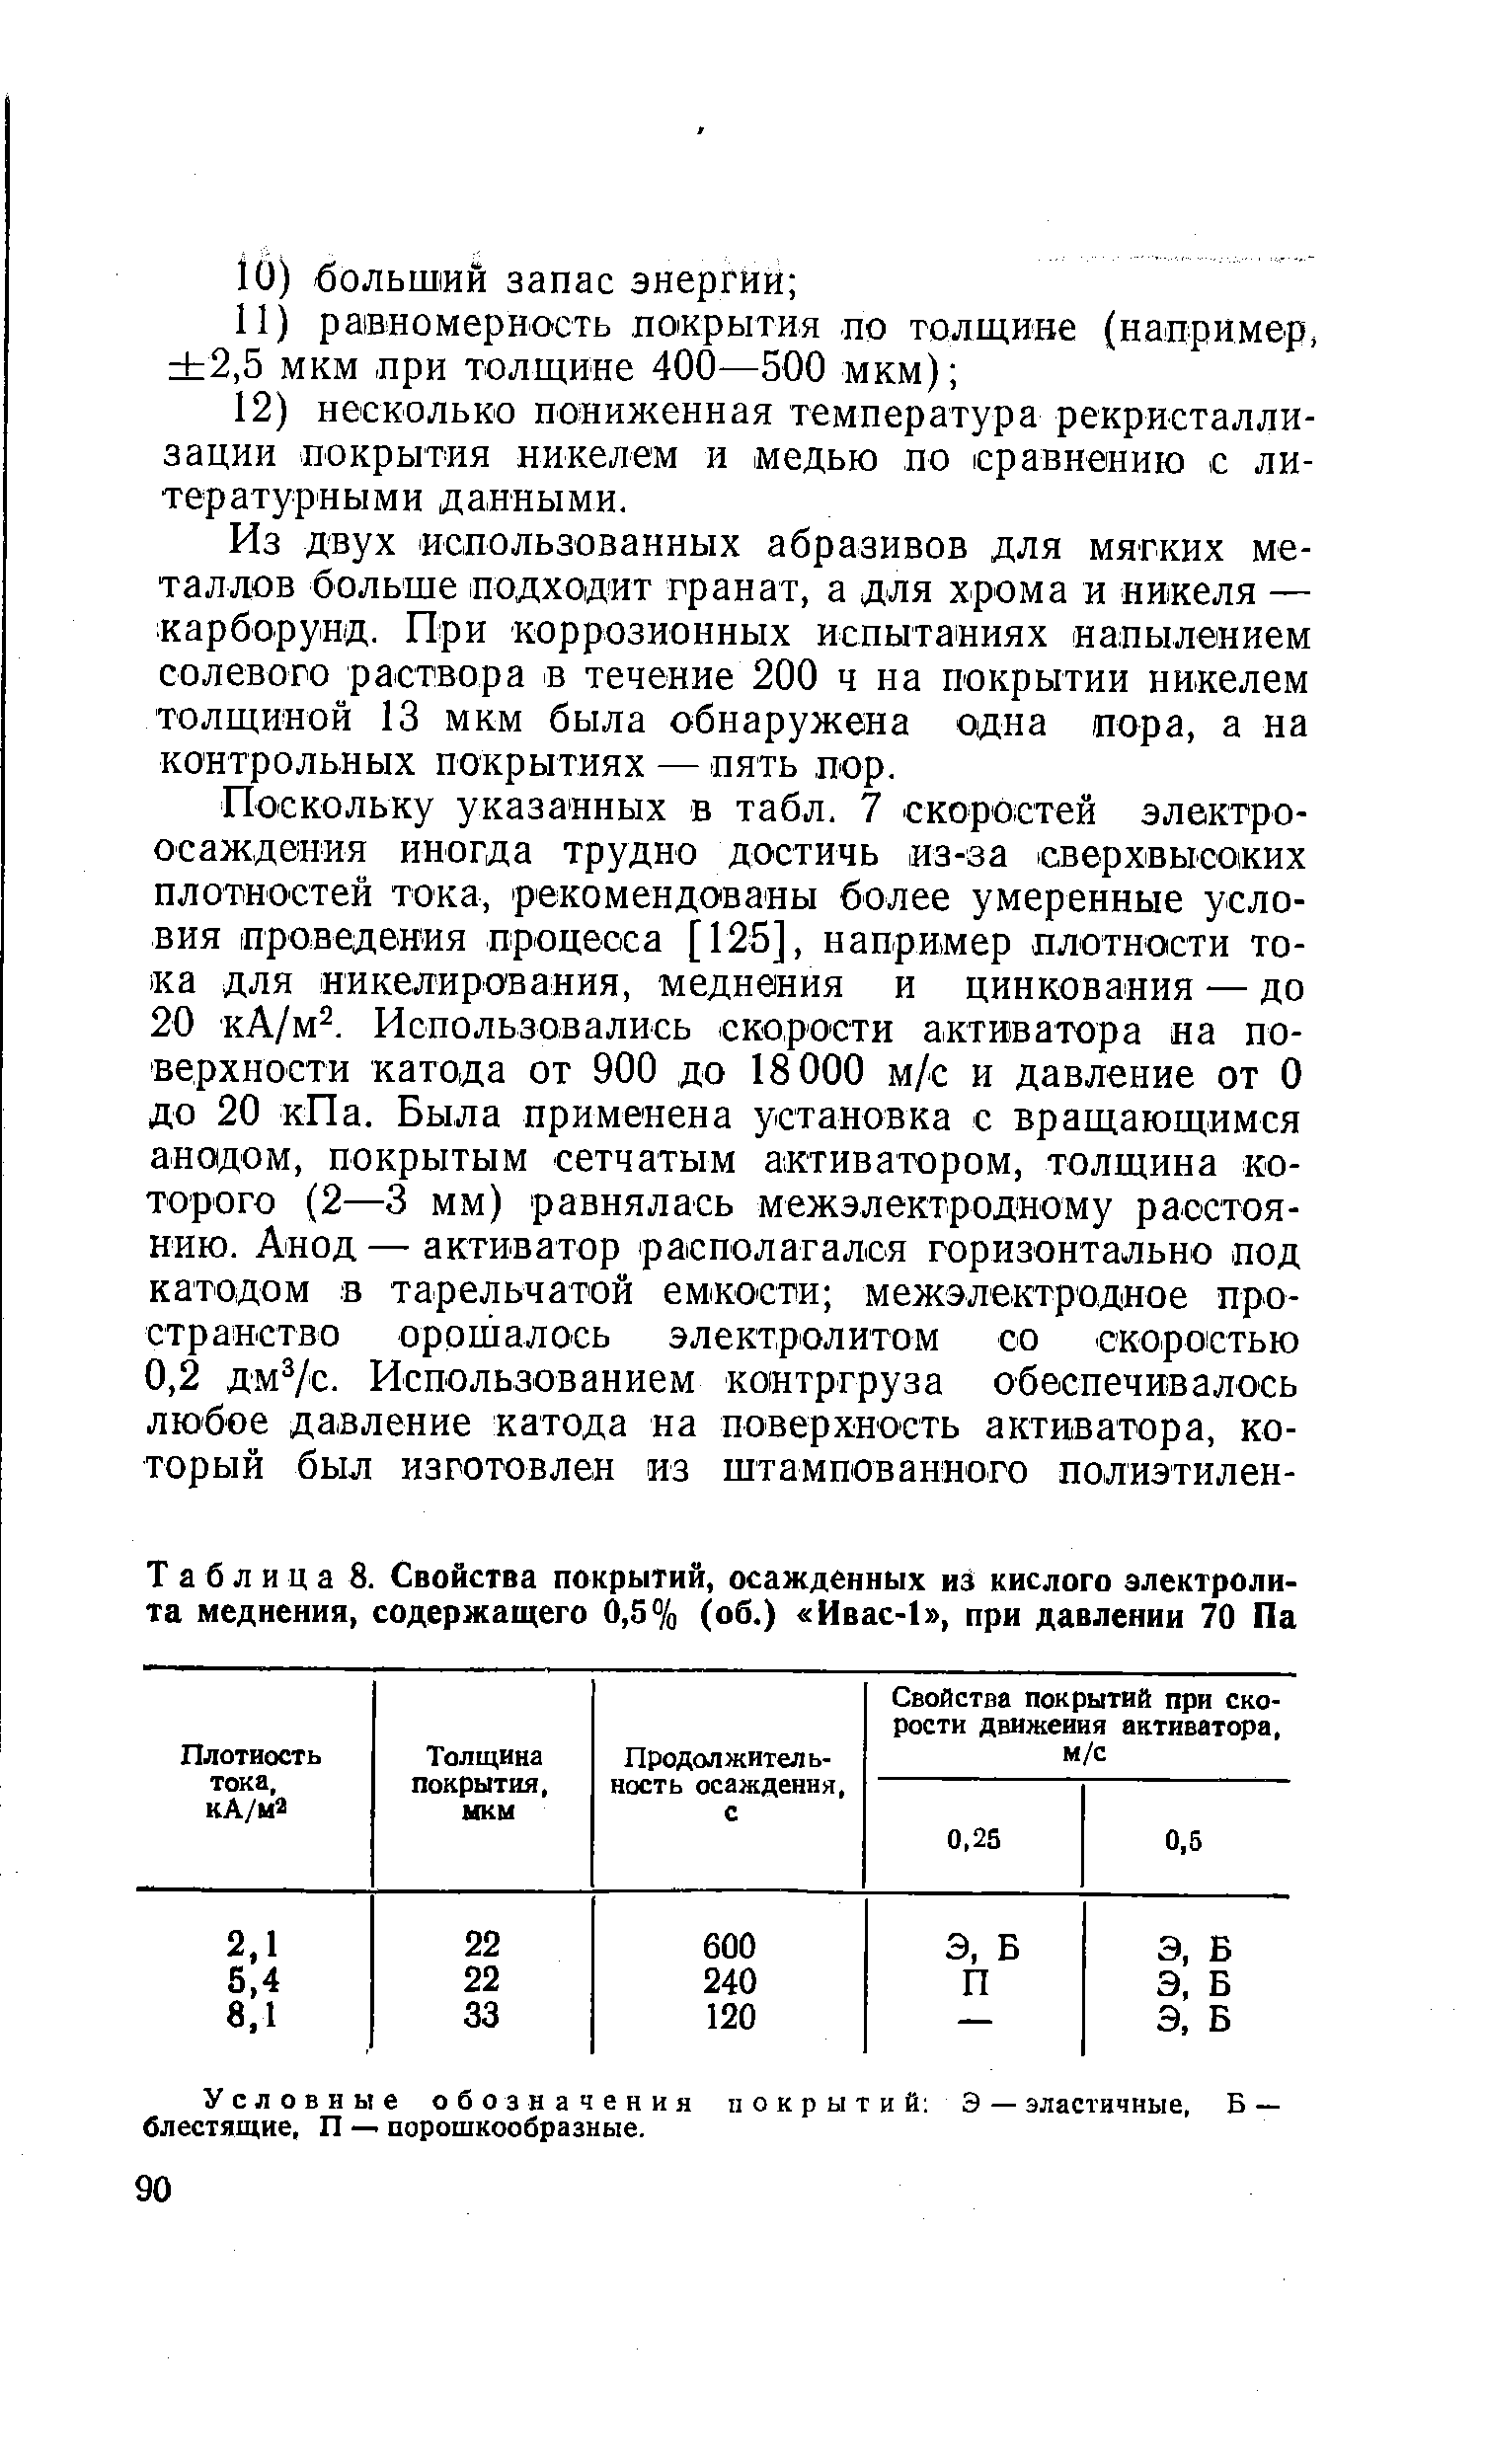 Таблица 8. <a href="/info/187564">Свойства покрытии</a>, осажденных из кислого электролита меднения, содержащего 0,5% (об.) Ивас-1 , при давлении 70 Па
